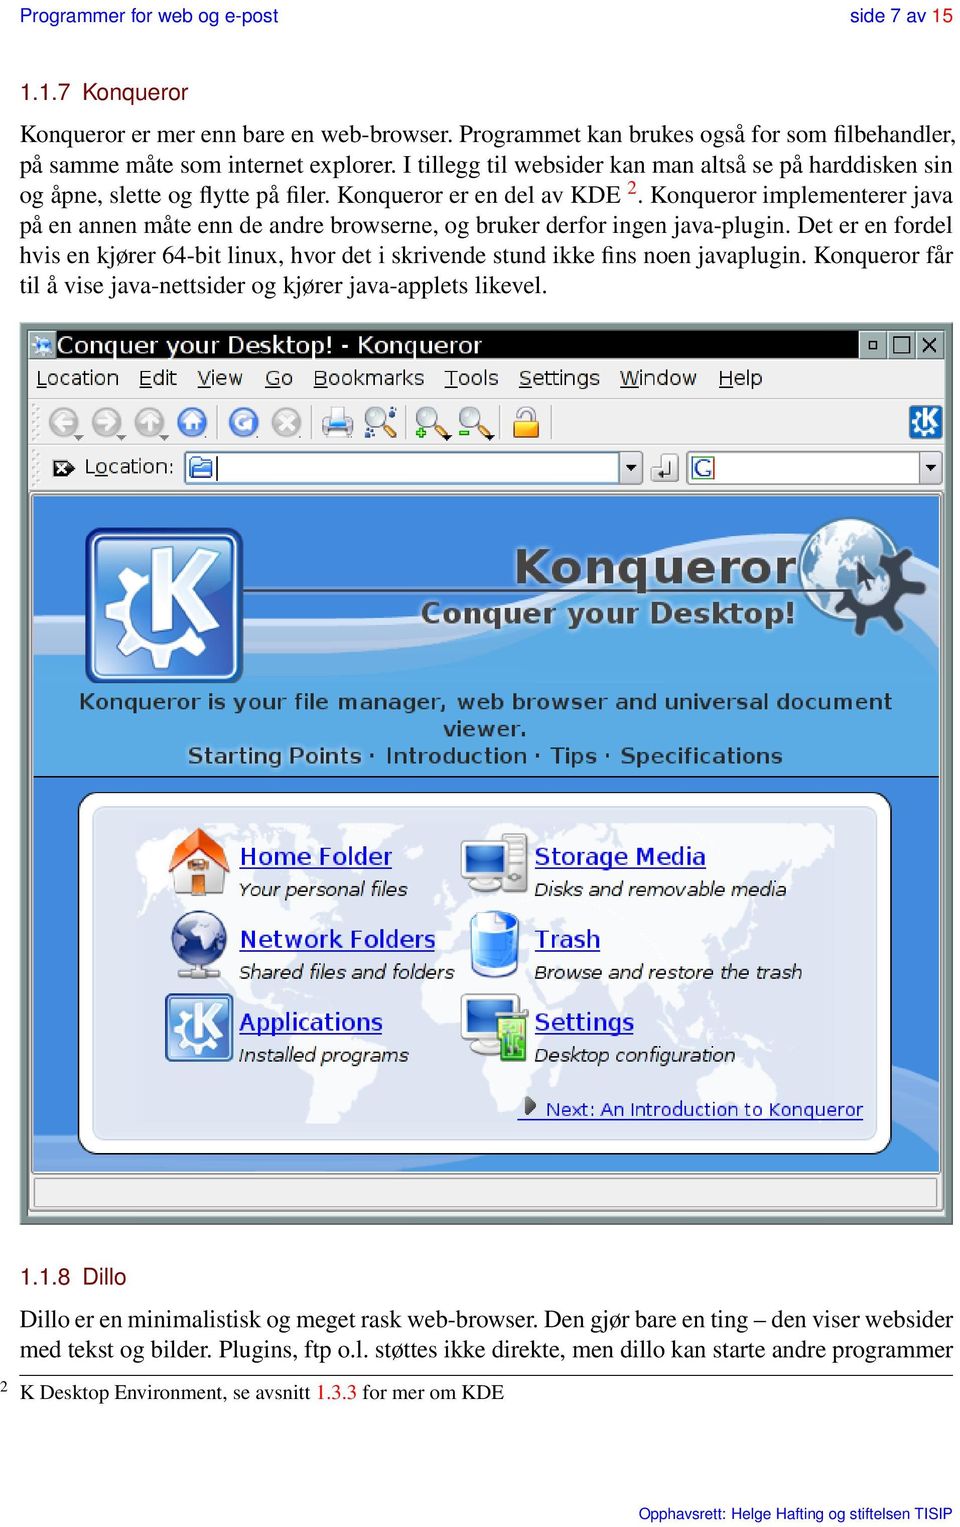 Konqueror implementerer java på en annen måte enn de andre browserne, og bruker derfor ingen java-plugin.